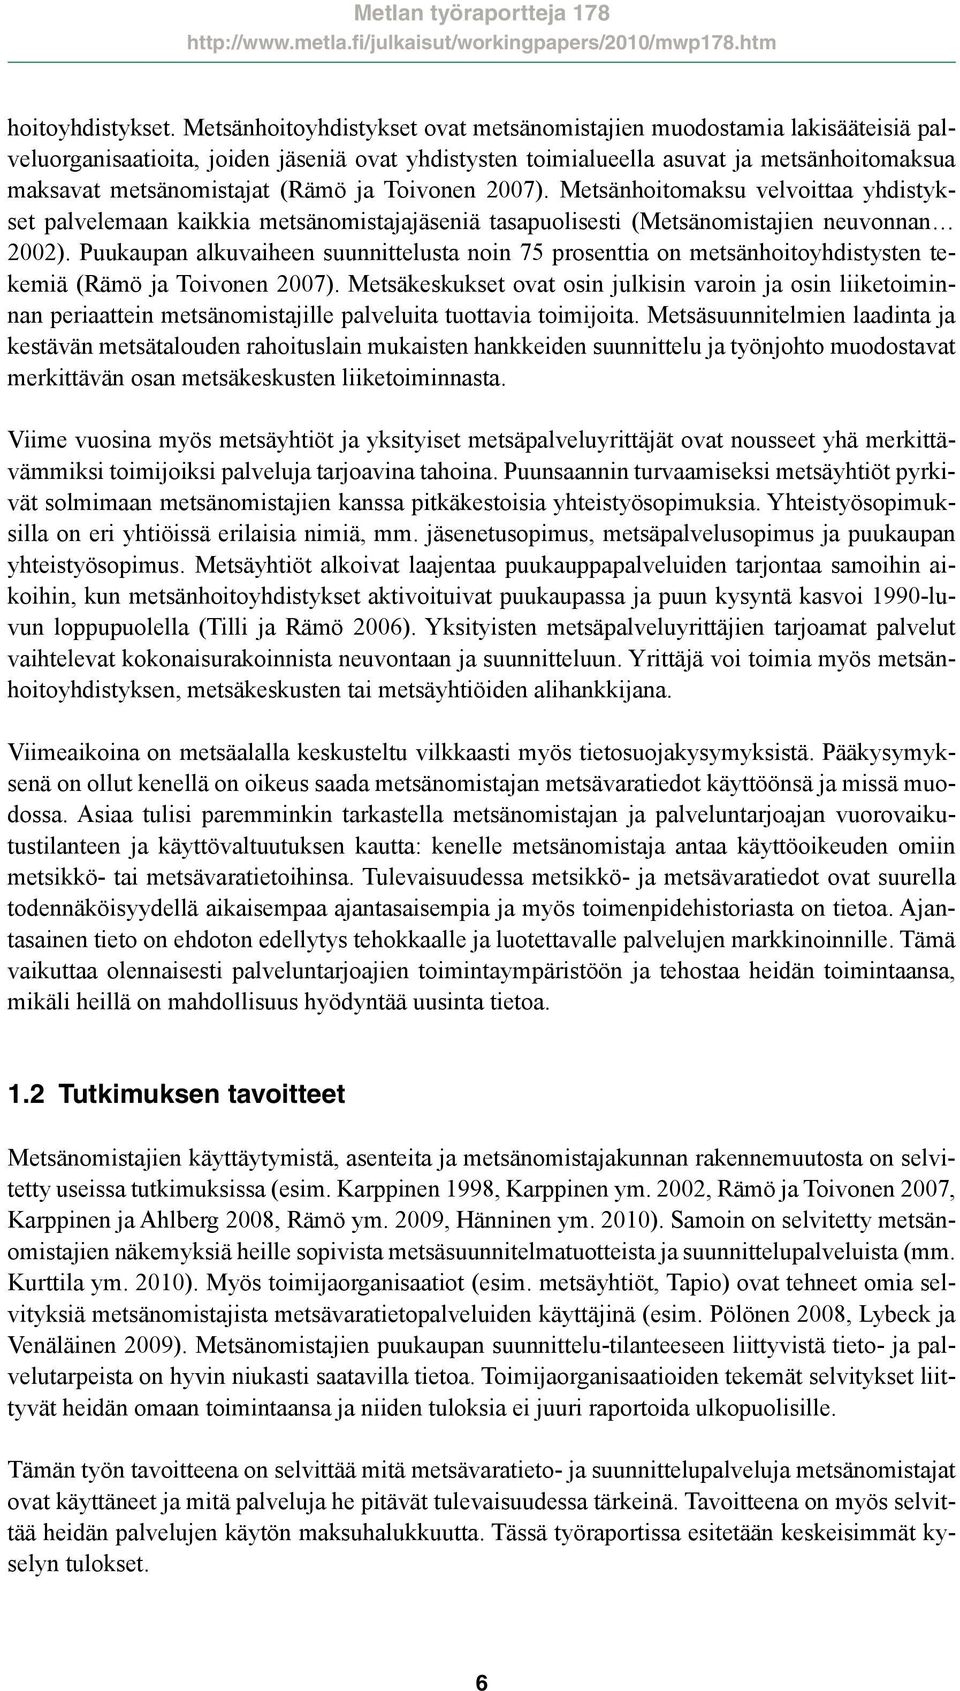 ja Toivonen 2007). Metsänhoitomaksu velvoittaa yhdistykset palvelemaan kaikkia metsänomistajajäseniä tasapuolisesti (Metsänomistajien neuvonnan 2002).